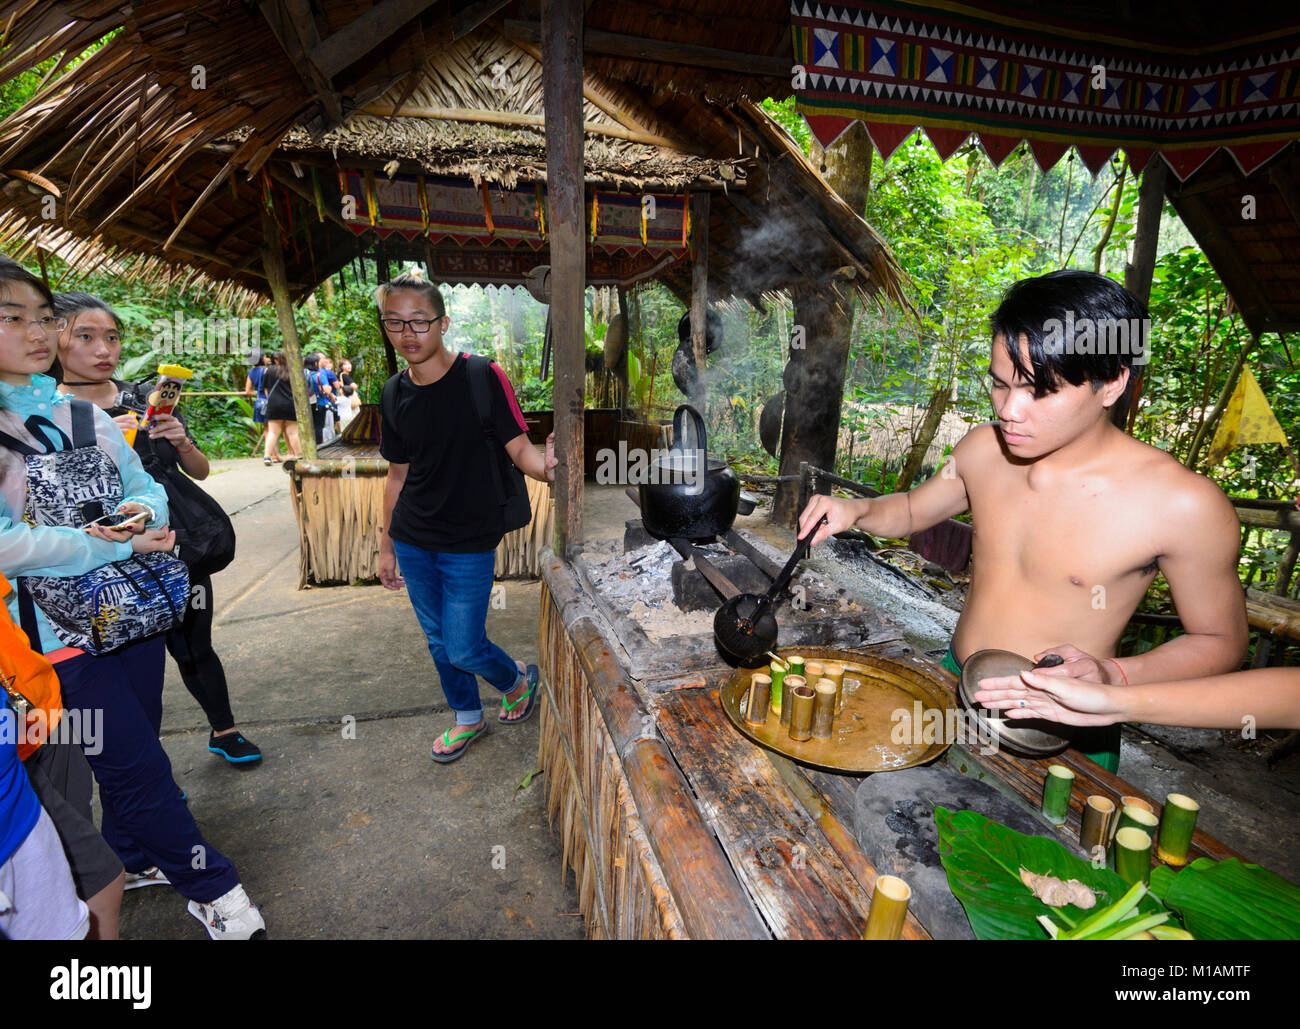 Chinese tourists watching a Malaysian man serving rice alcohol, Mari Mari Cultural Village, Kota Kinabalu, Sabah, Borneo, Malaysia Stock Photo